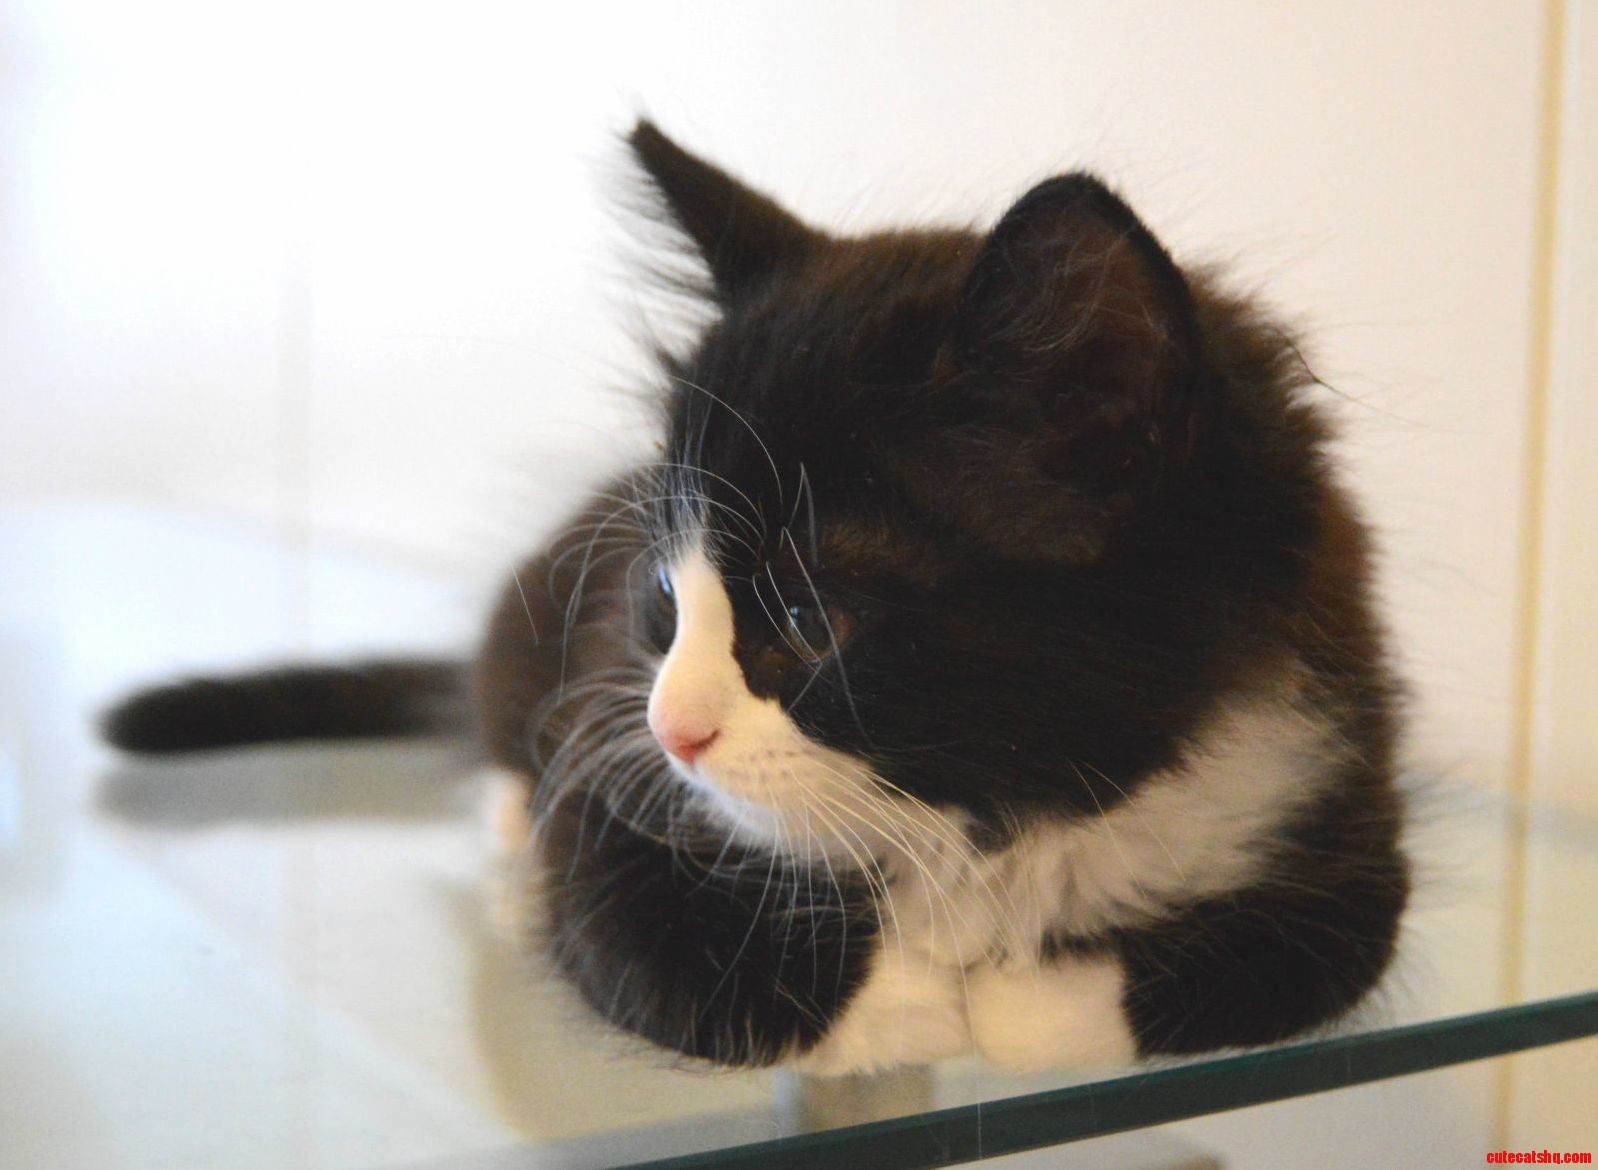 Kitten loaf on glass